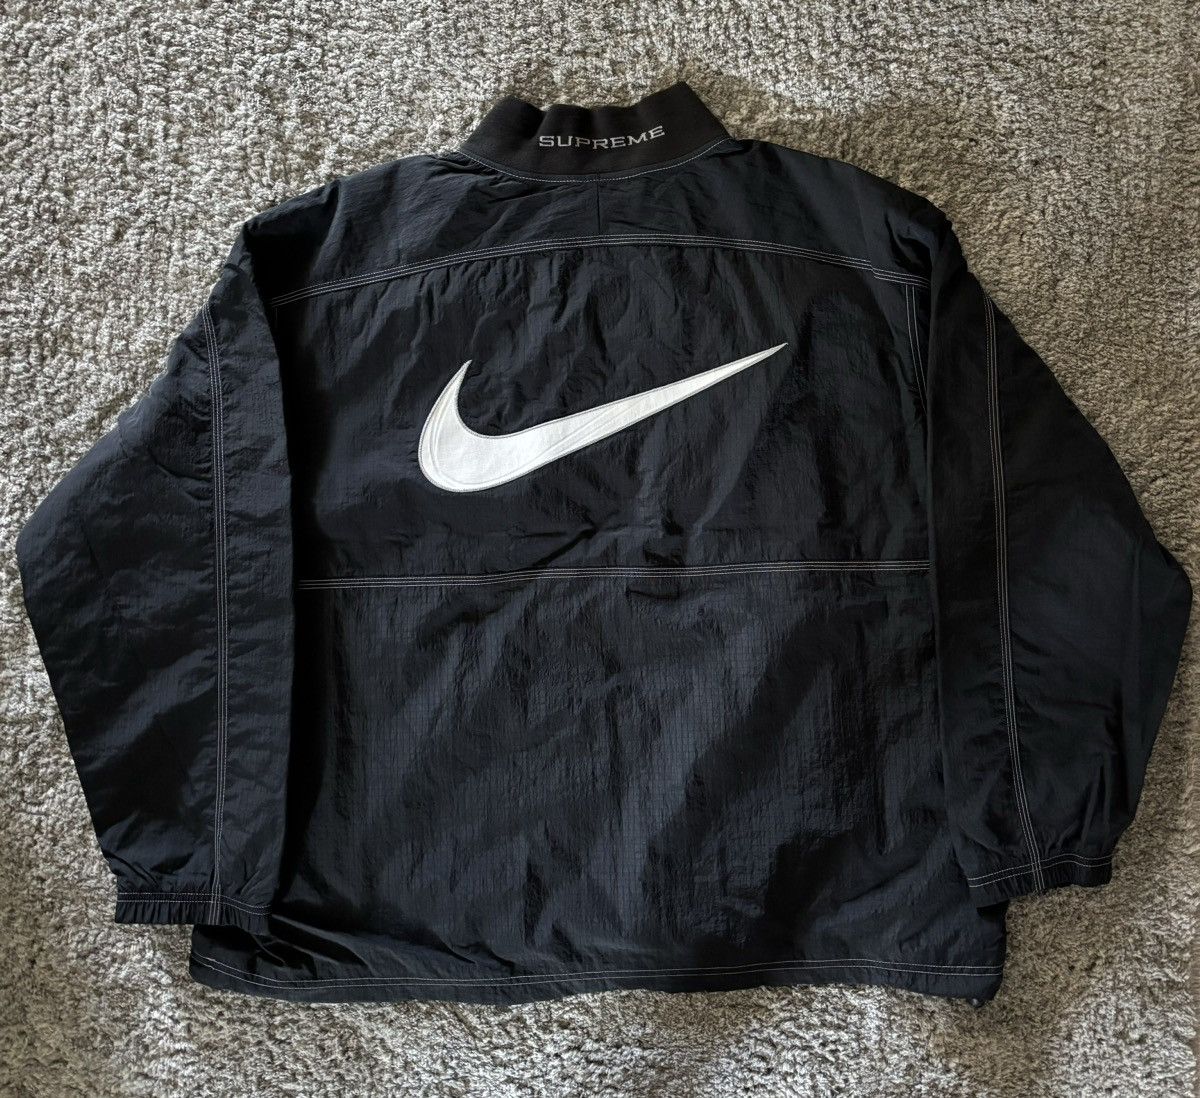 Supreme Supreme x Nike Ripstop Pullover Black | Grailed